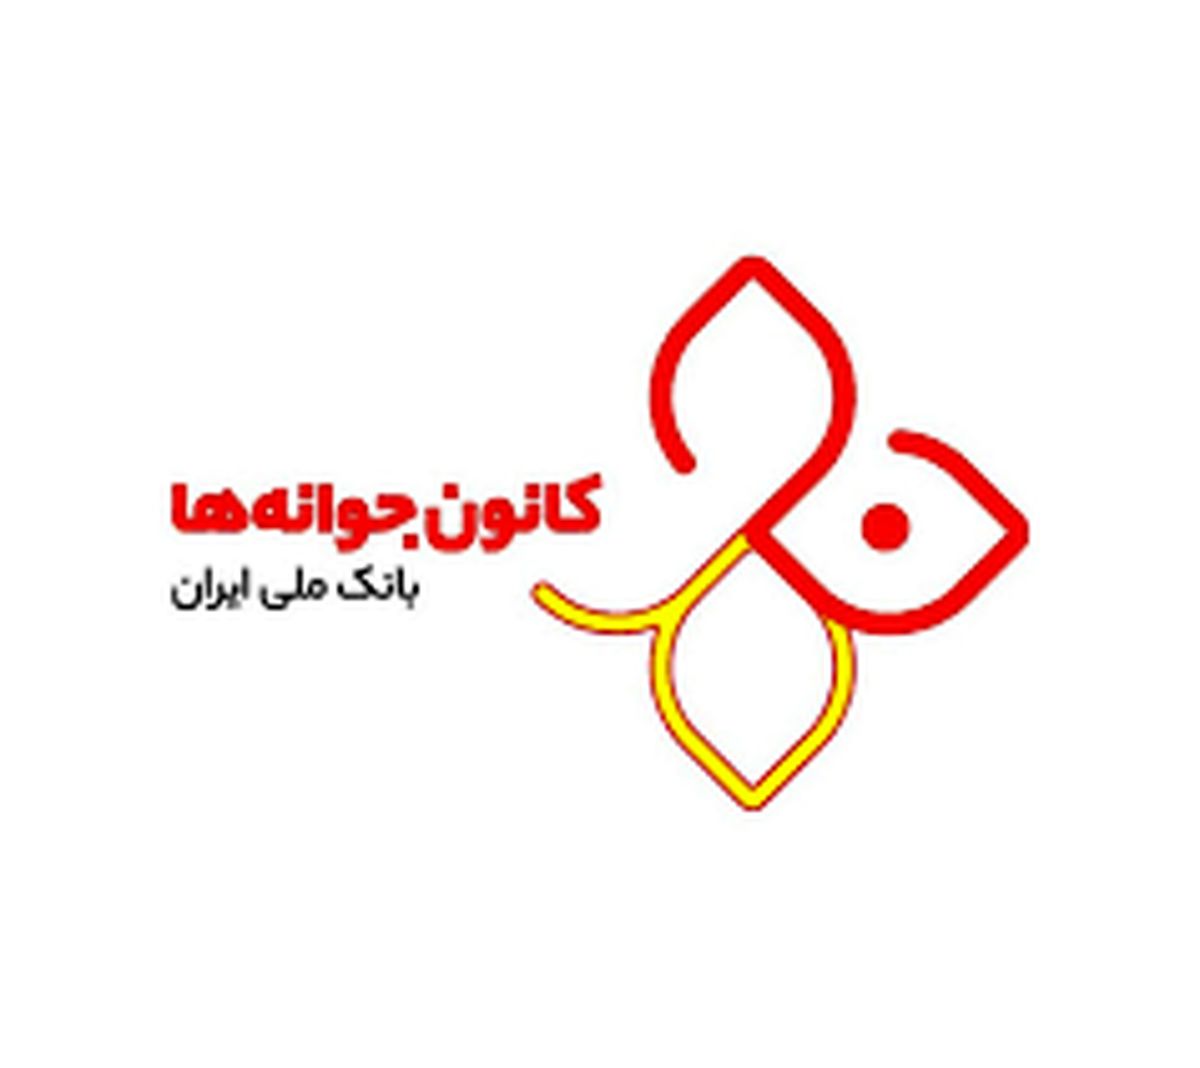 مسابقه کانون جوانه ها به مناسبت 93 سالگی بانک ملی ایران